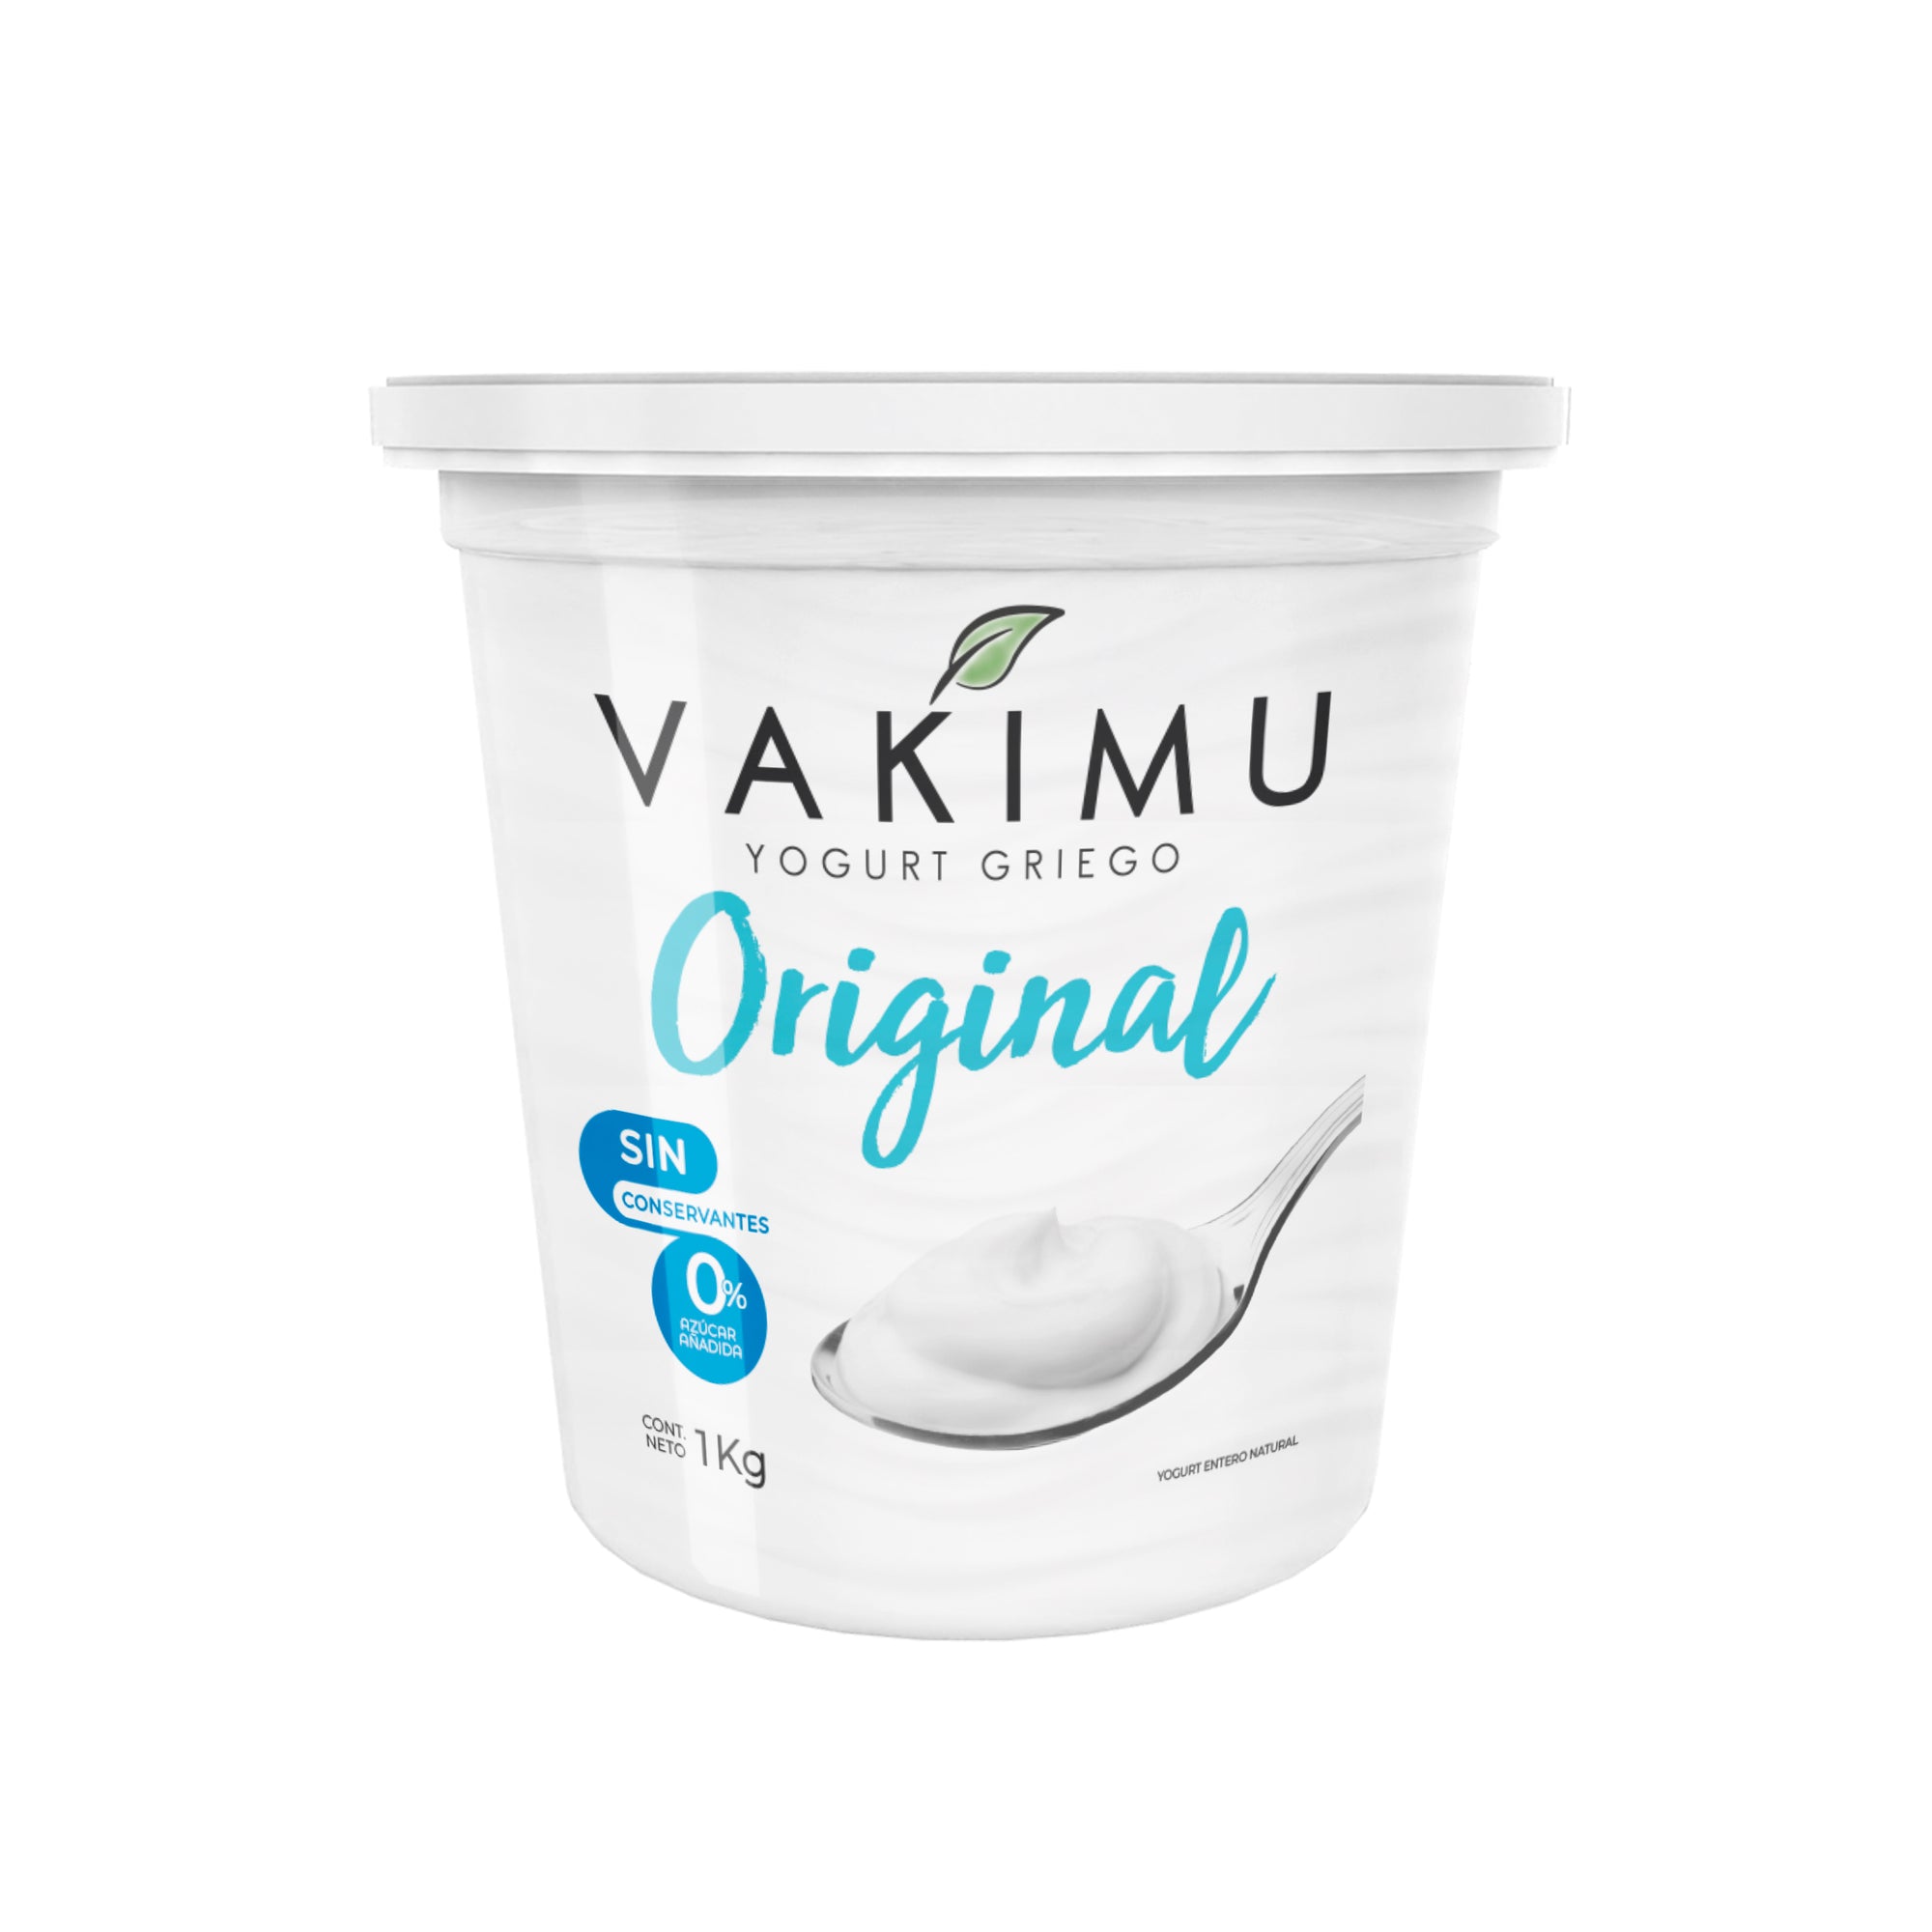 Yogurt Griego Vakimu Original 1Kg